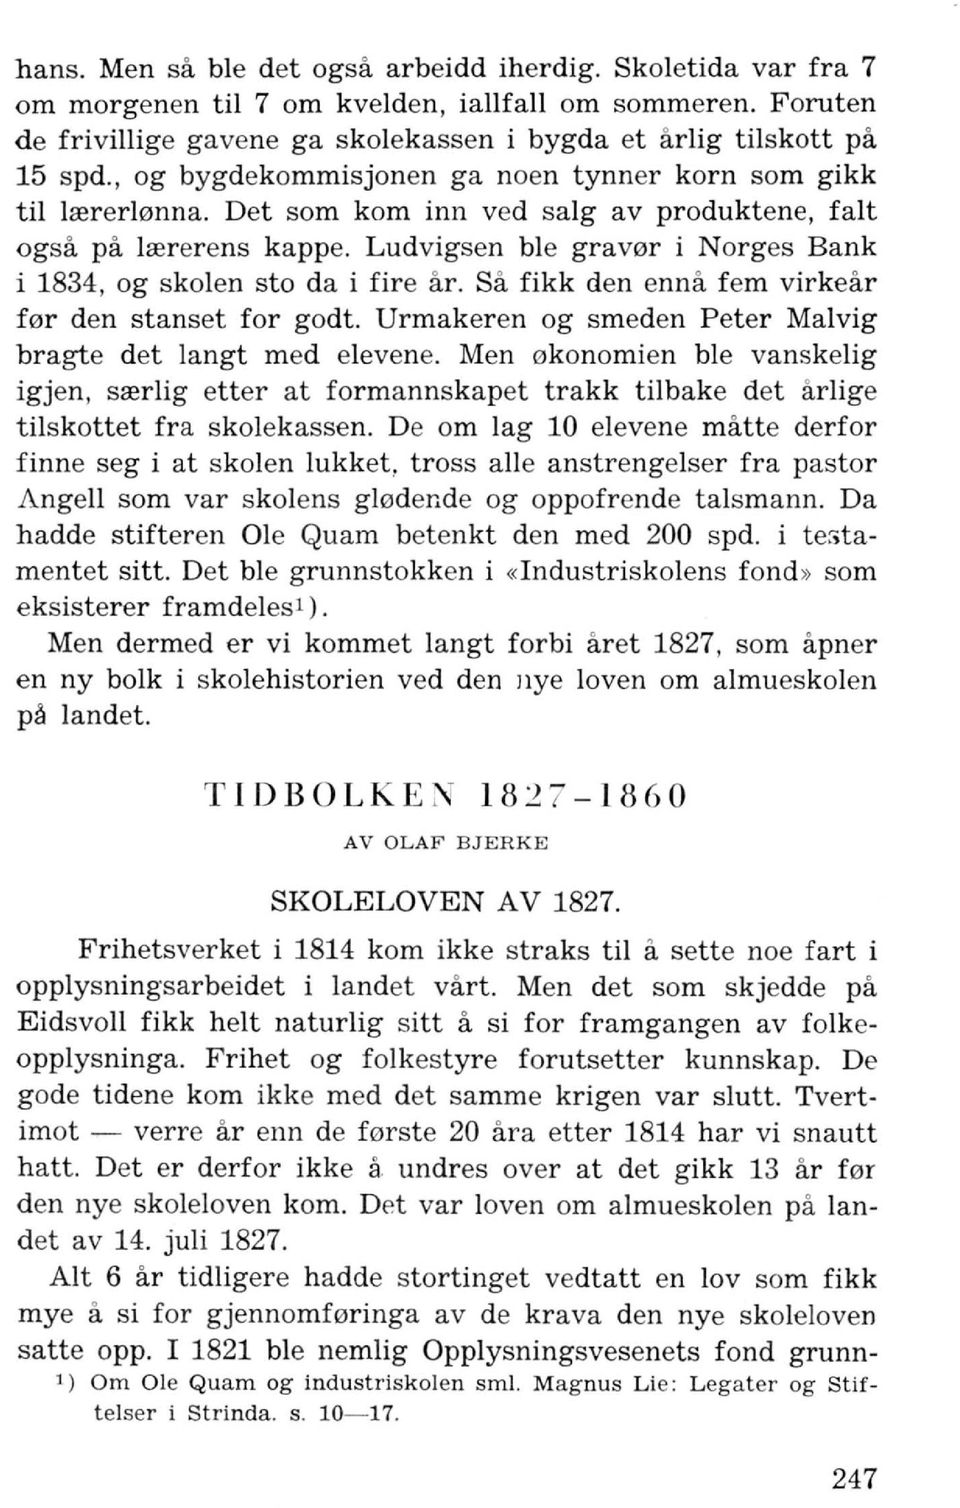 Ludvigsen ble grav0r i Norges Bank i 1834, og skolen sto da i fire ar. Sa fikk den enna fern virkear f0r den stanset for godt. Urmakeren og smeden Peter Malvig bragte det langt med elevene.